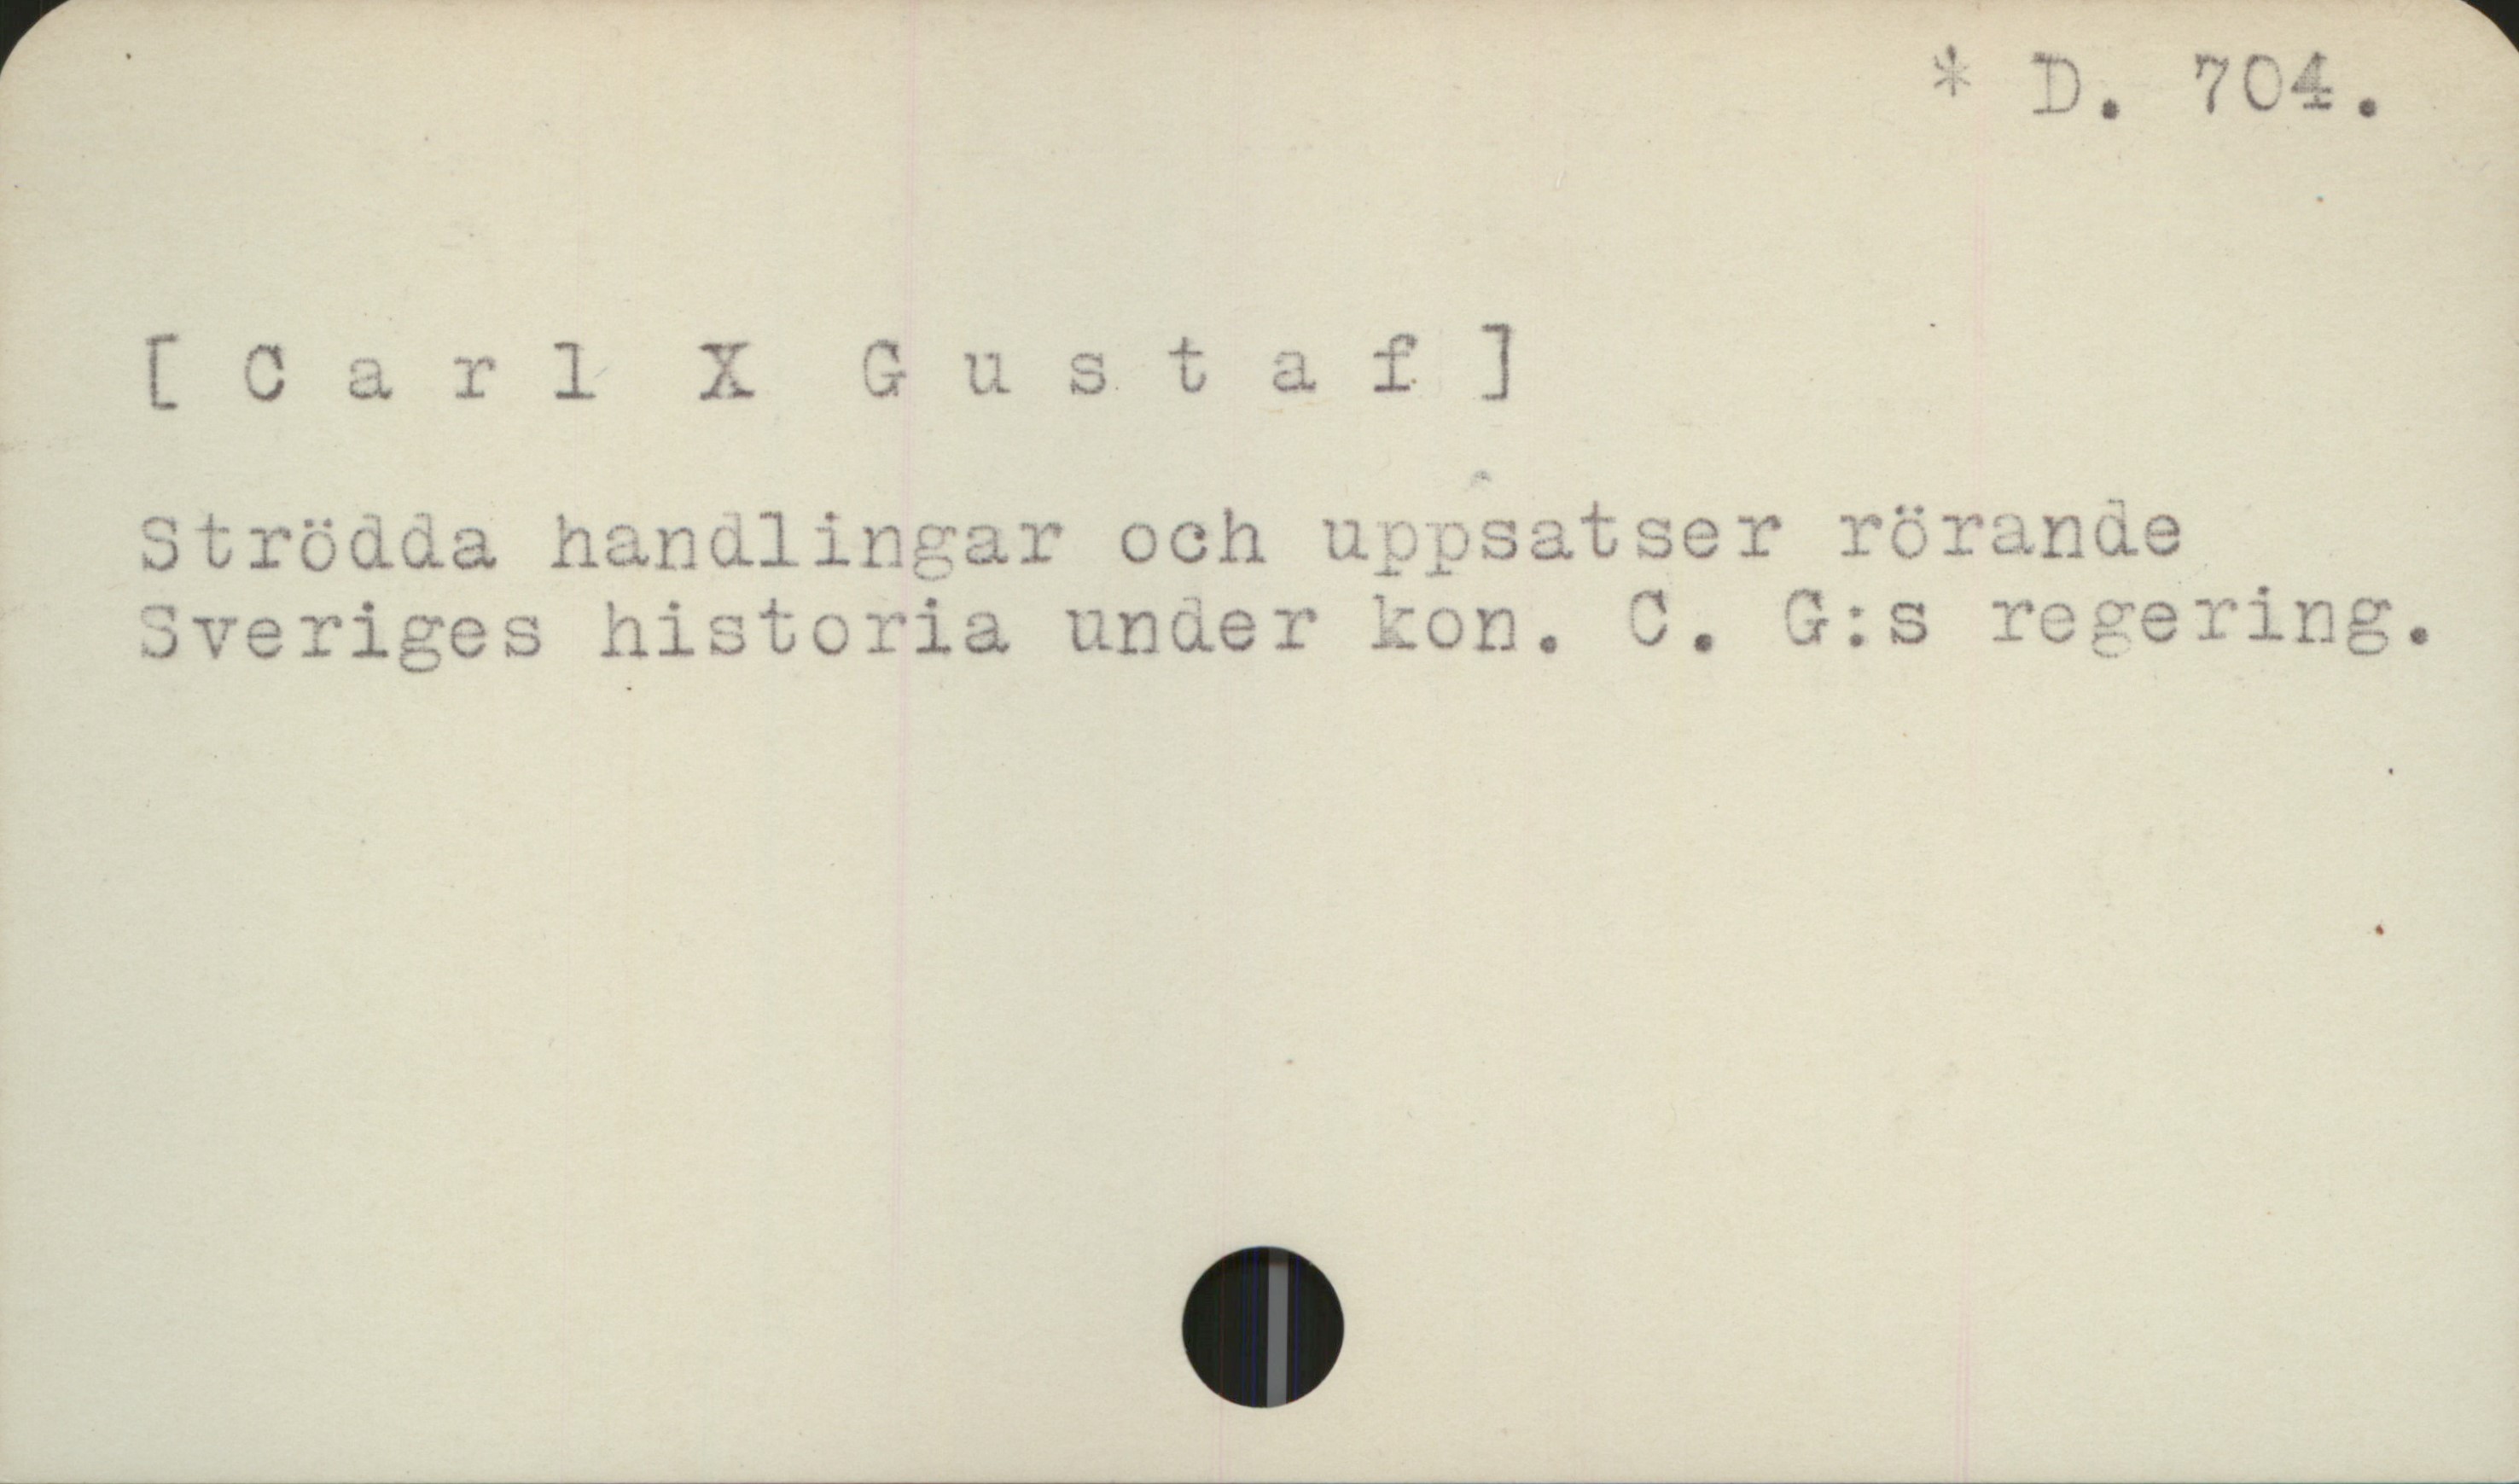 [Carl X Gustaf] D. 704.
[Carl X Gustaf]
Strödda handlingar och uppsatser rörande
Sveriges historia under kon. C. G:s regering.